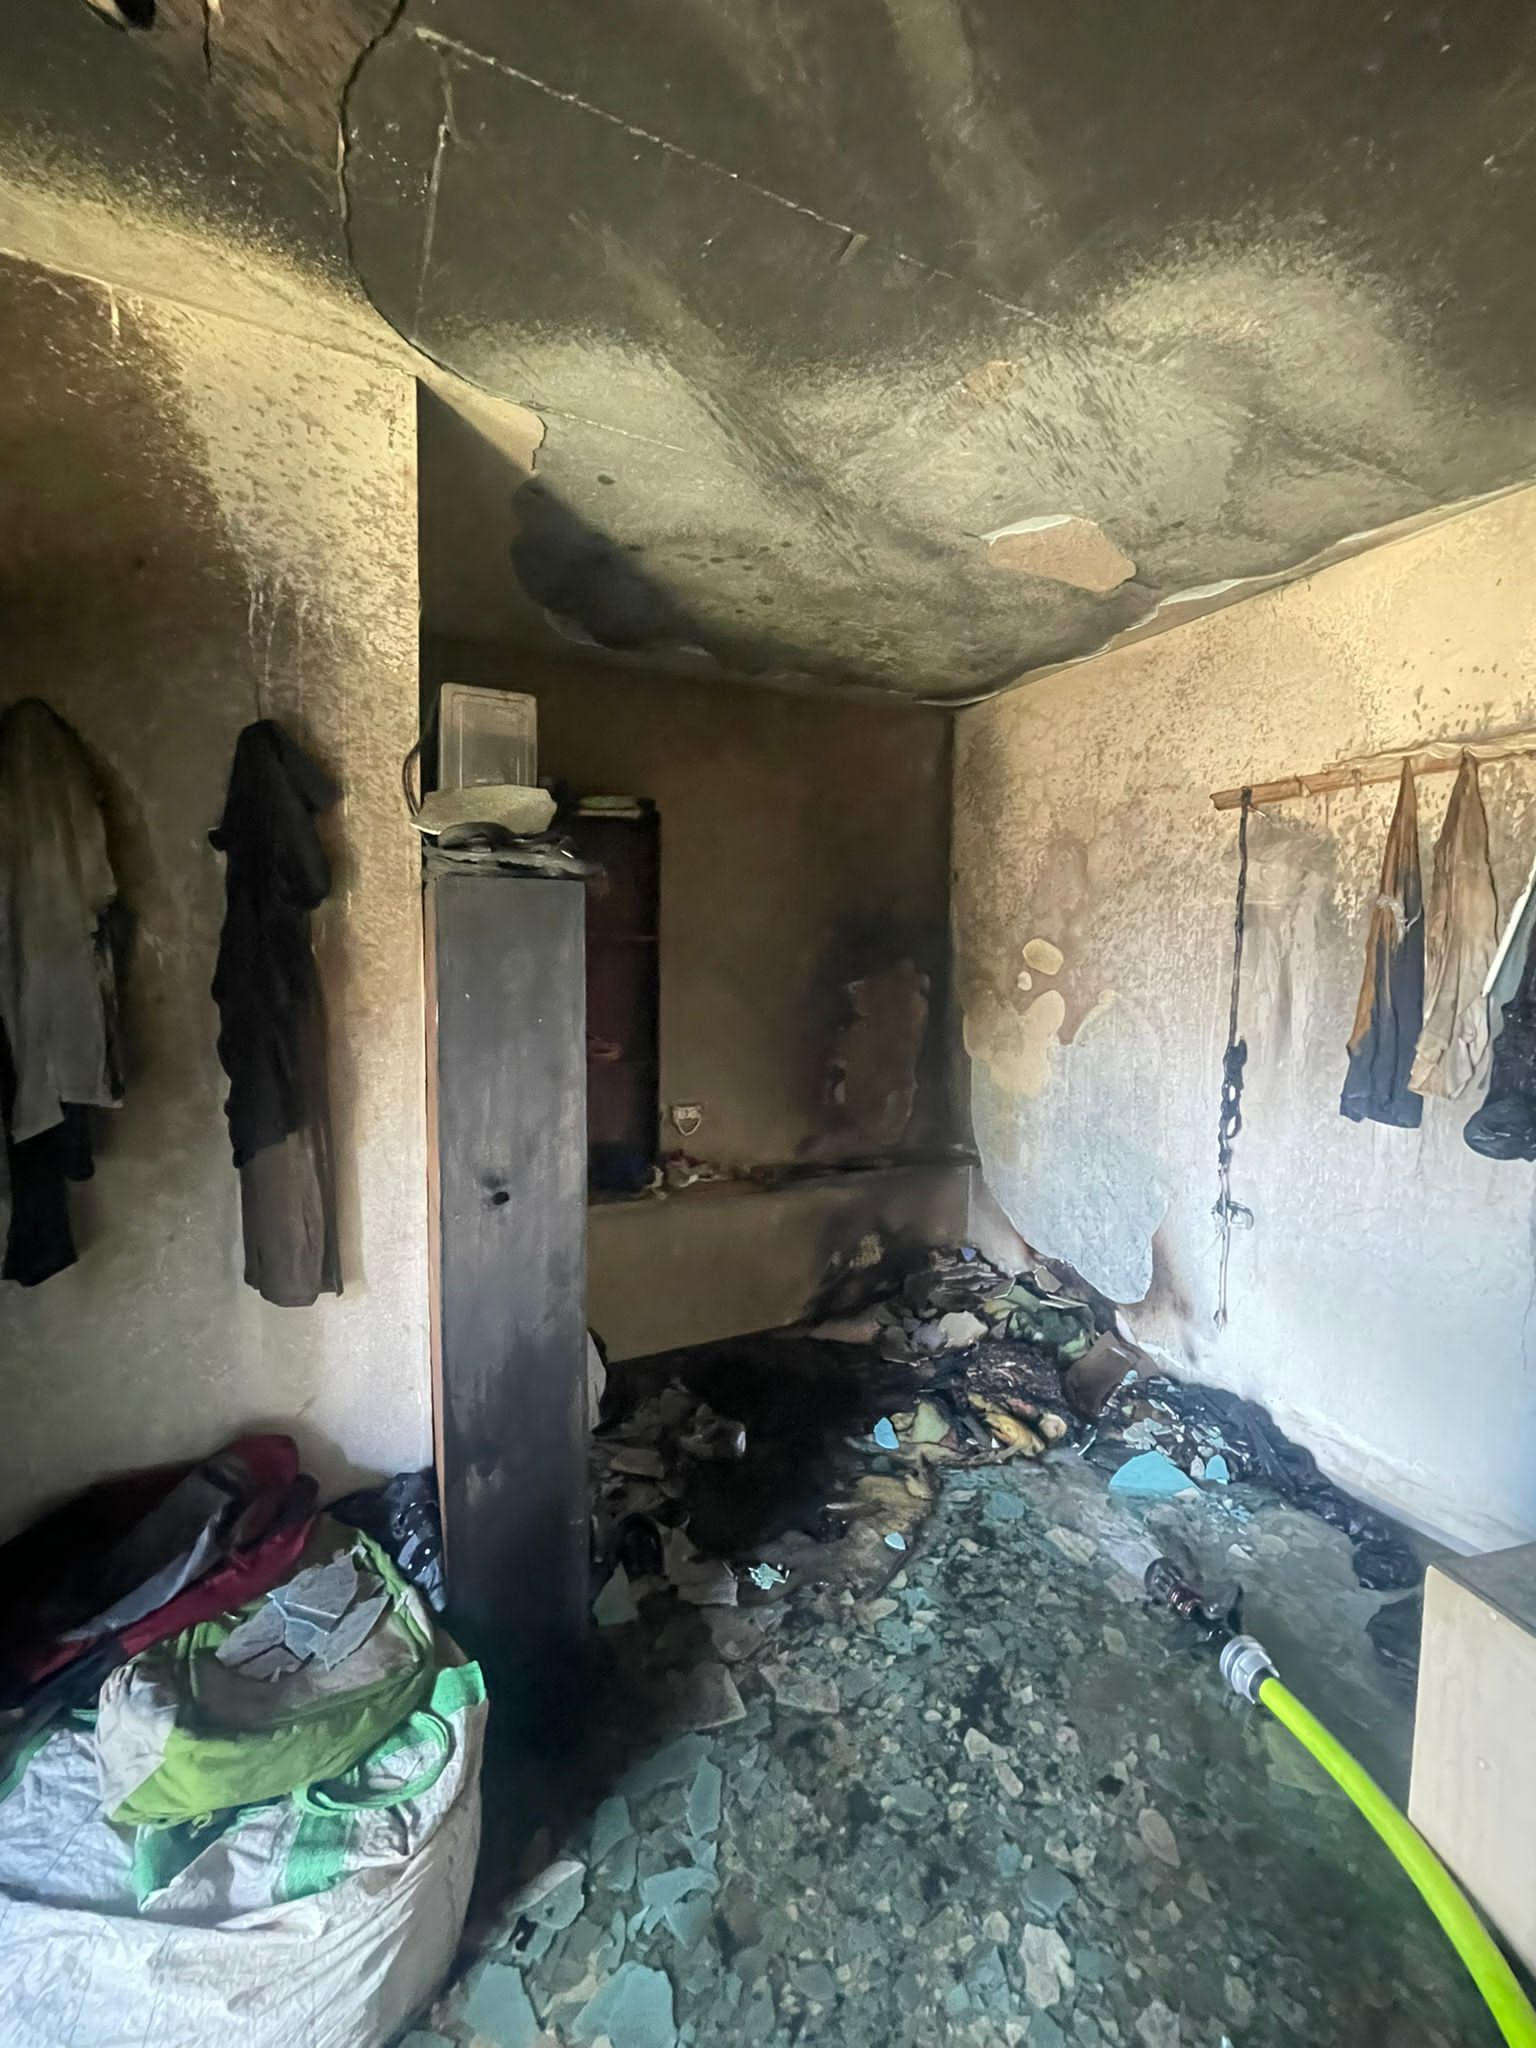 حريق يلتهم شقة سكنية في حيفا دون وقوع اصابات